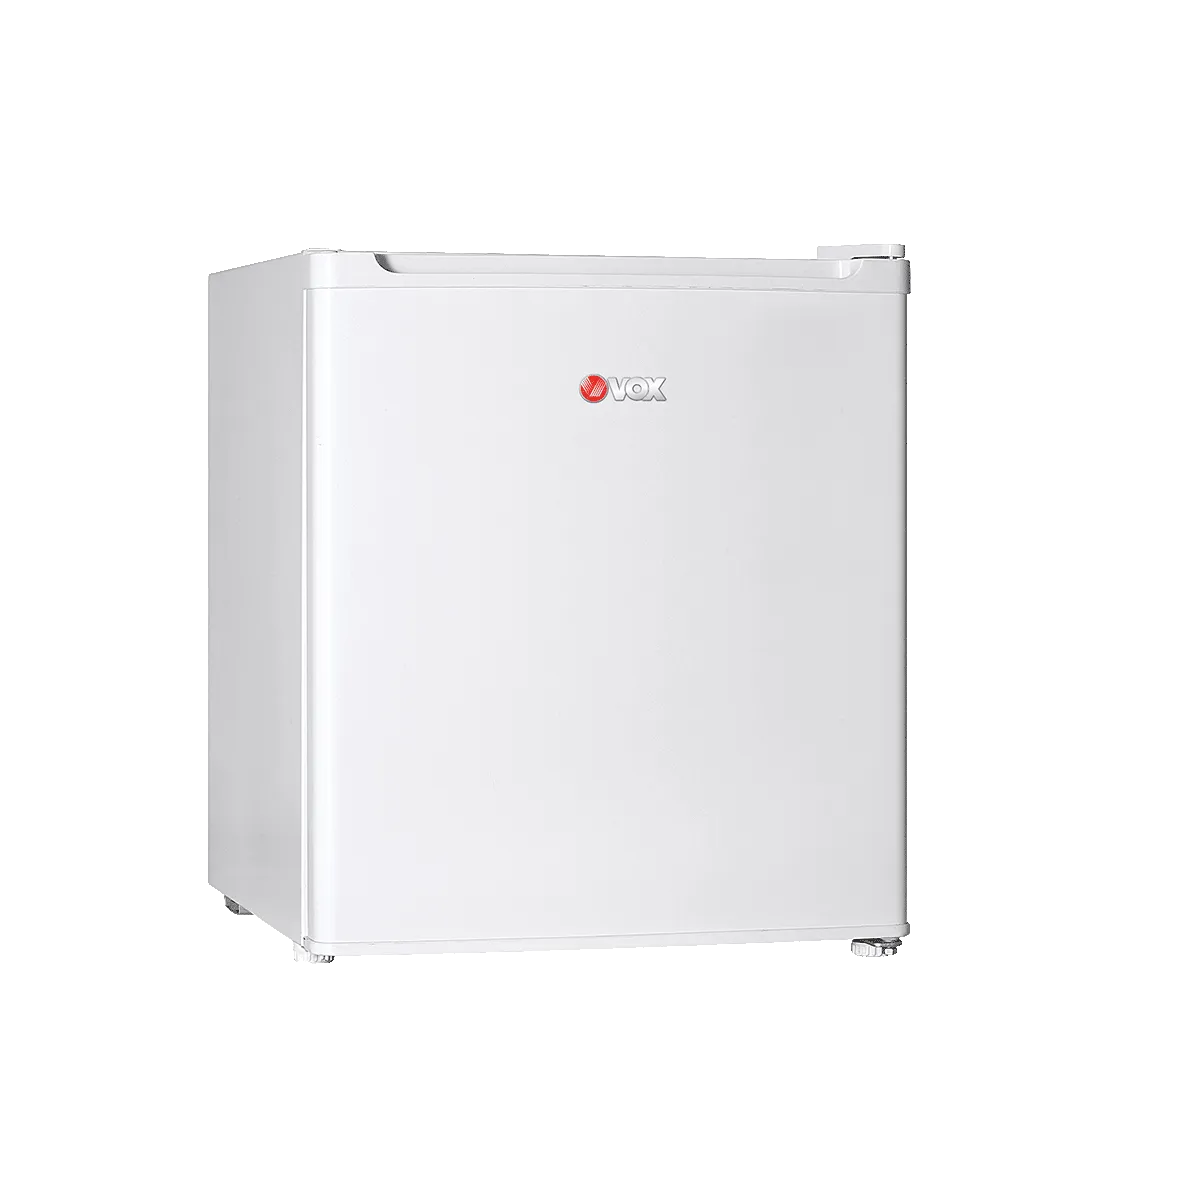 Refrigerator KS 0610 F 